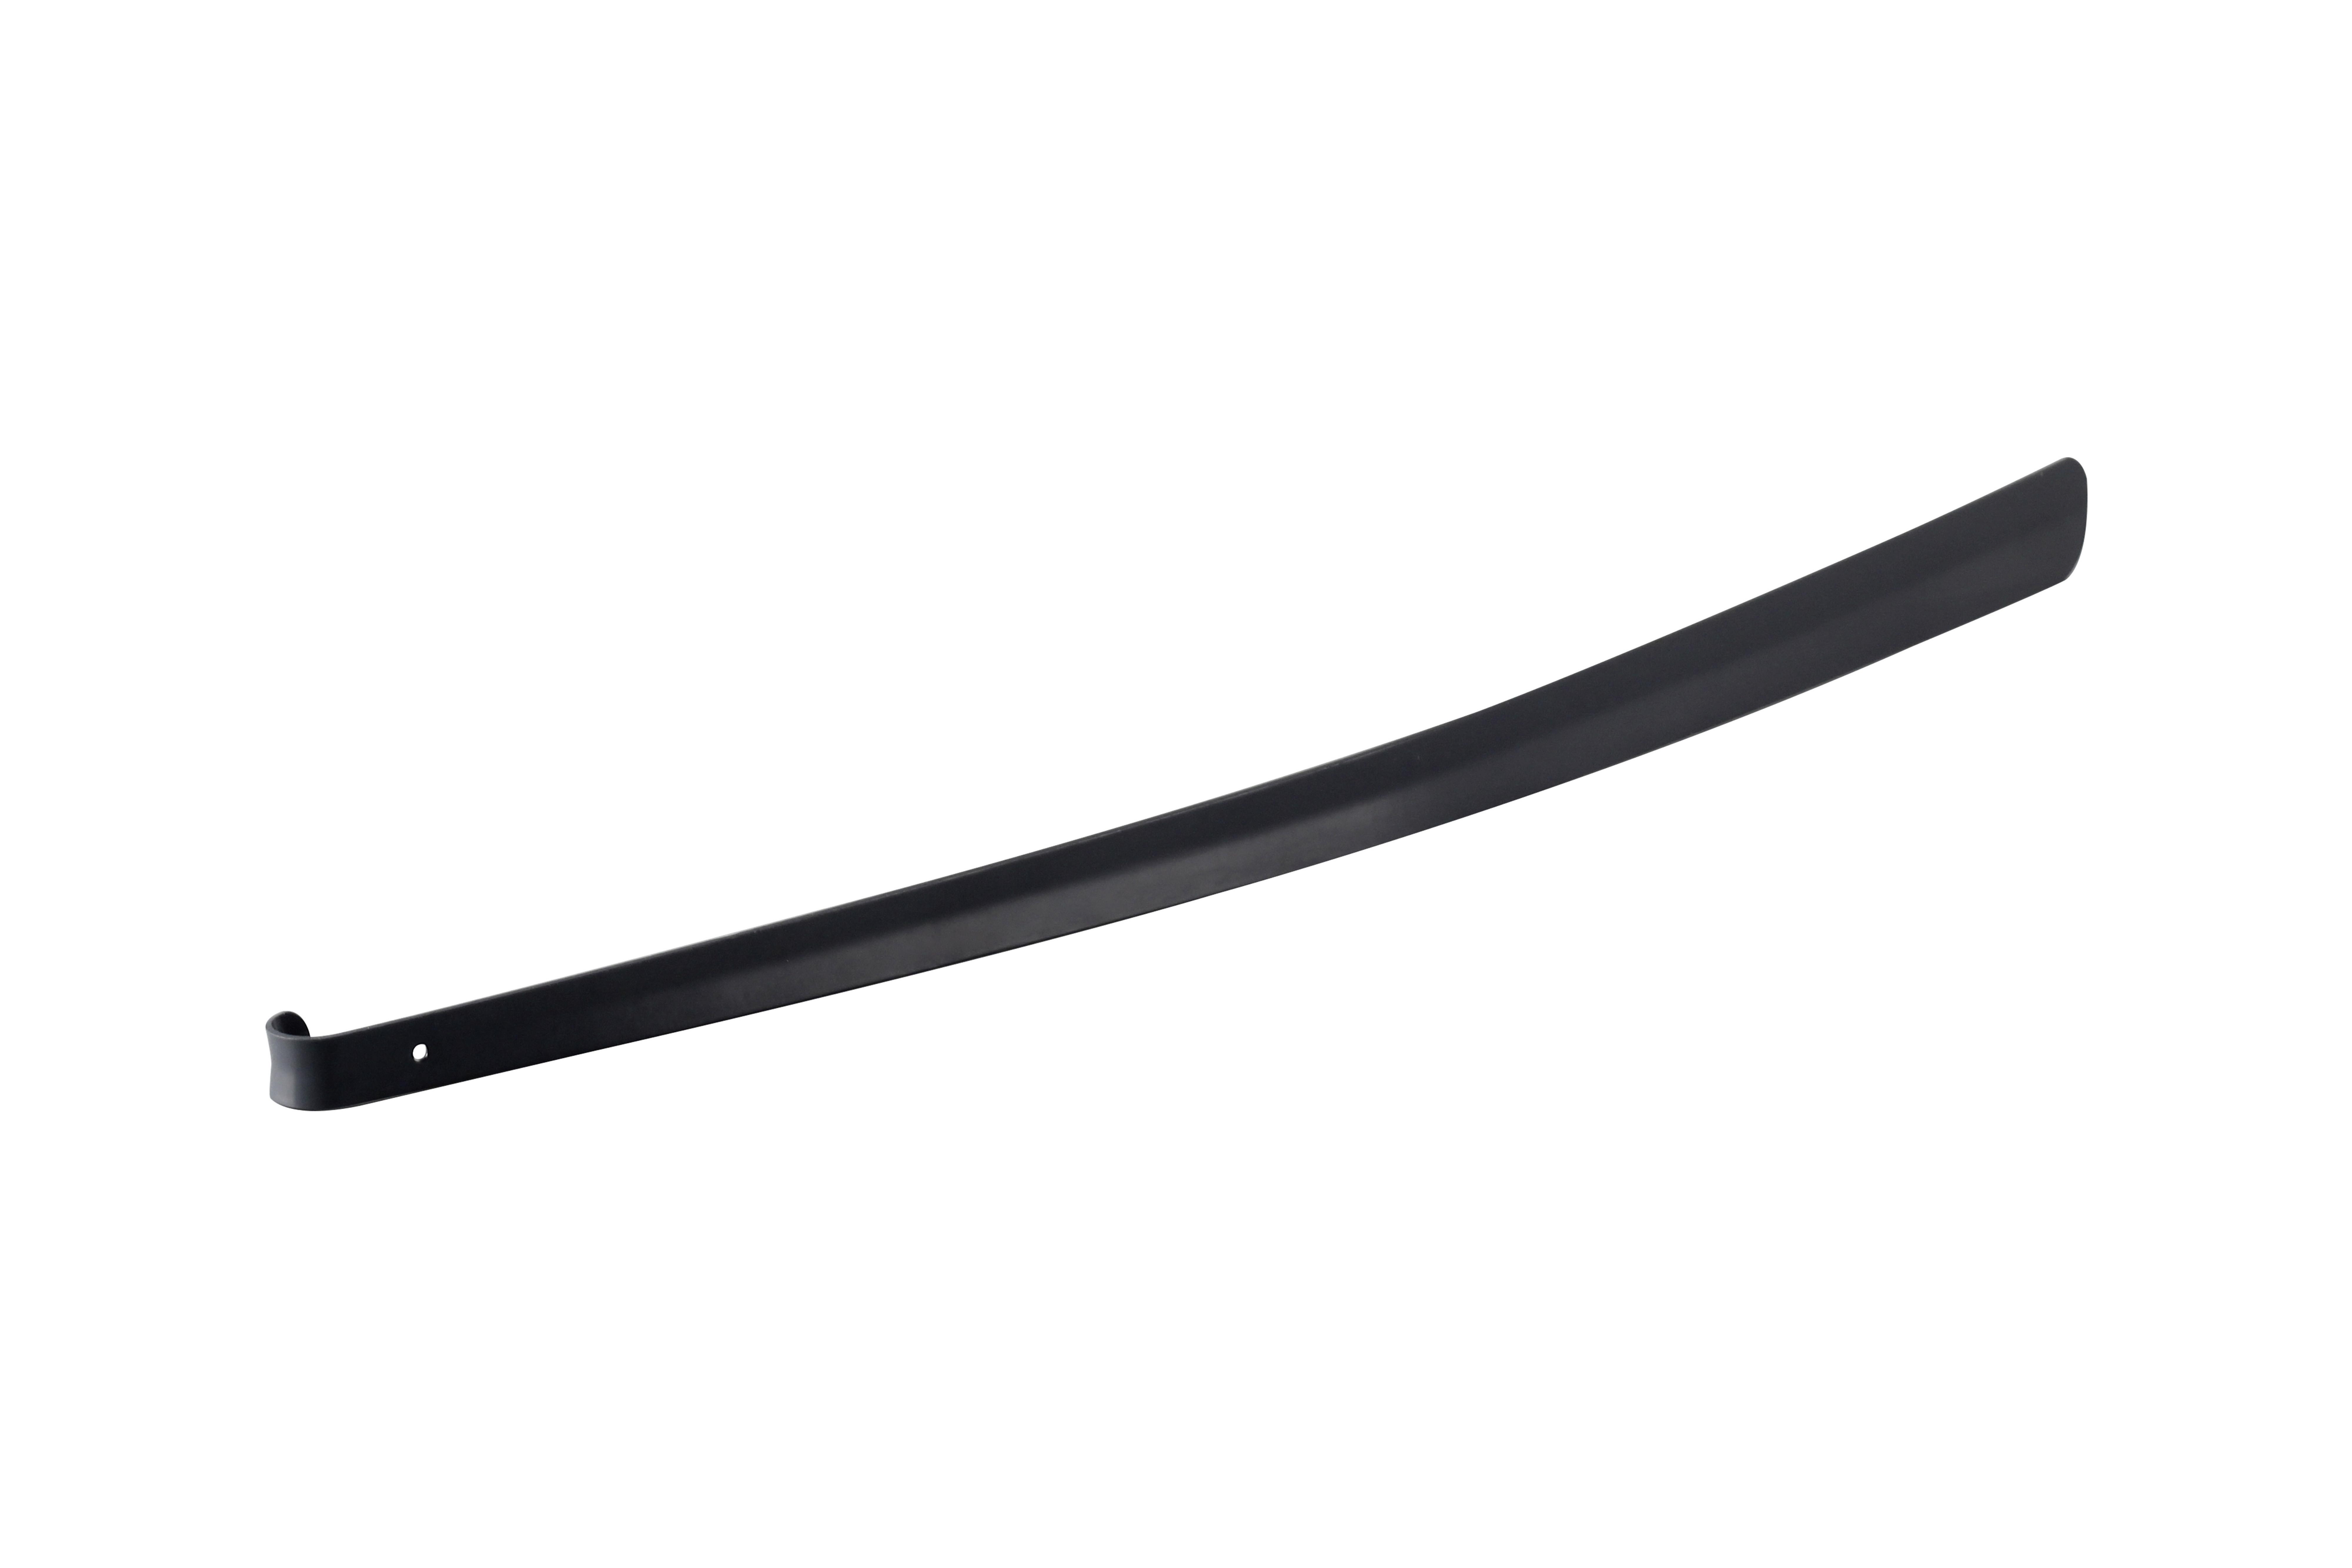 Obouvací Lžíce Big Xxl - černá, Konvenční, kov (4,2/79cm) - Premium Living